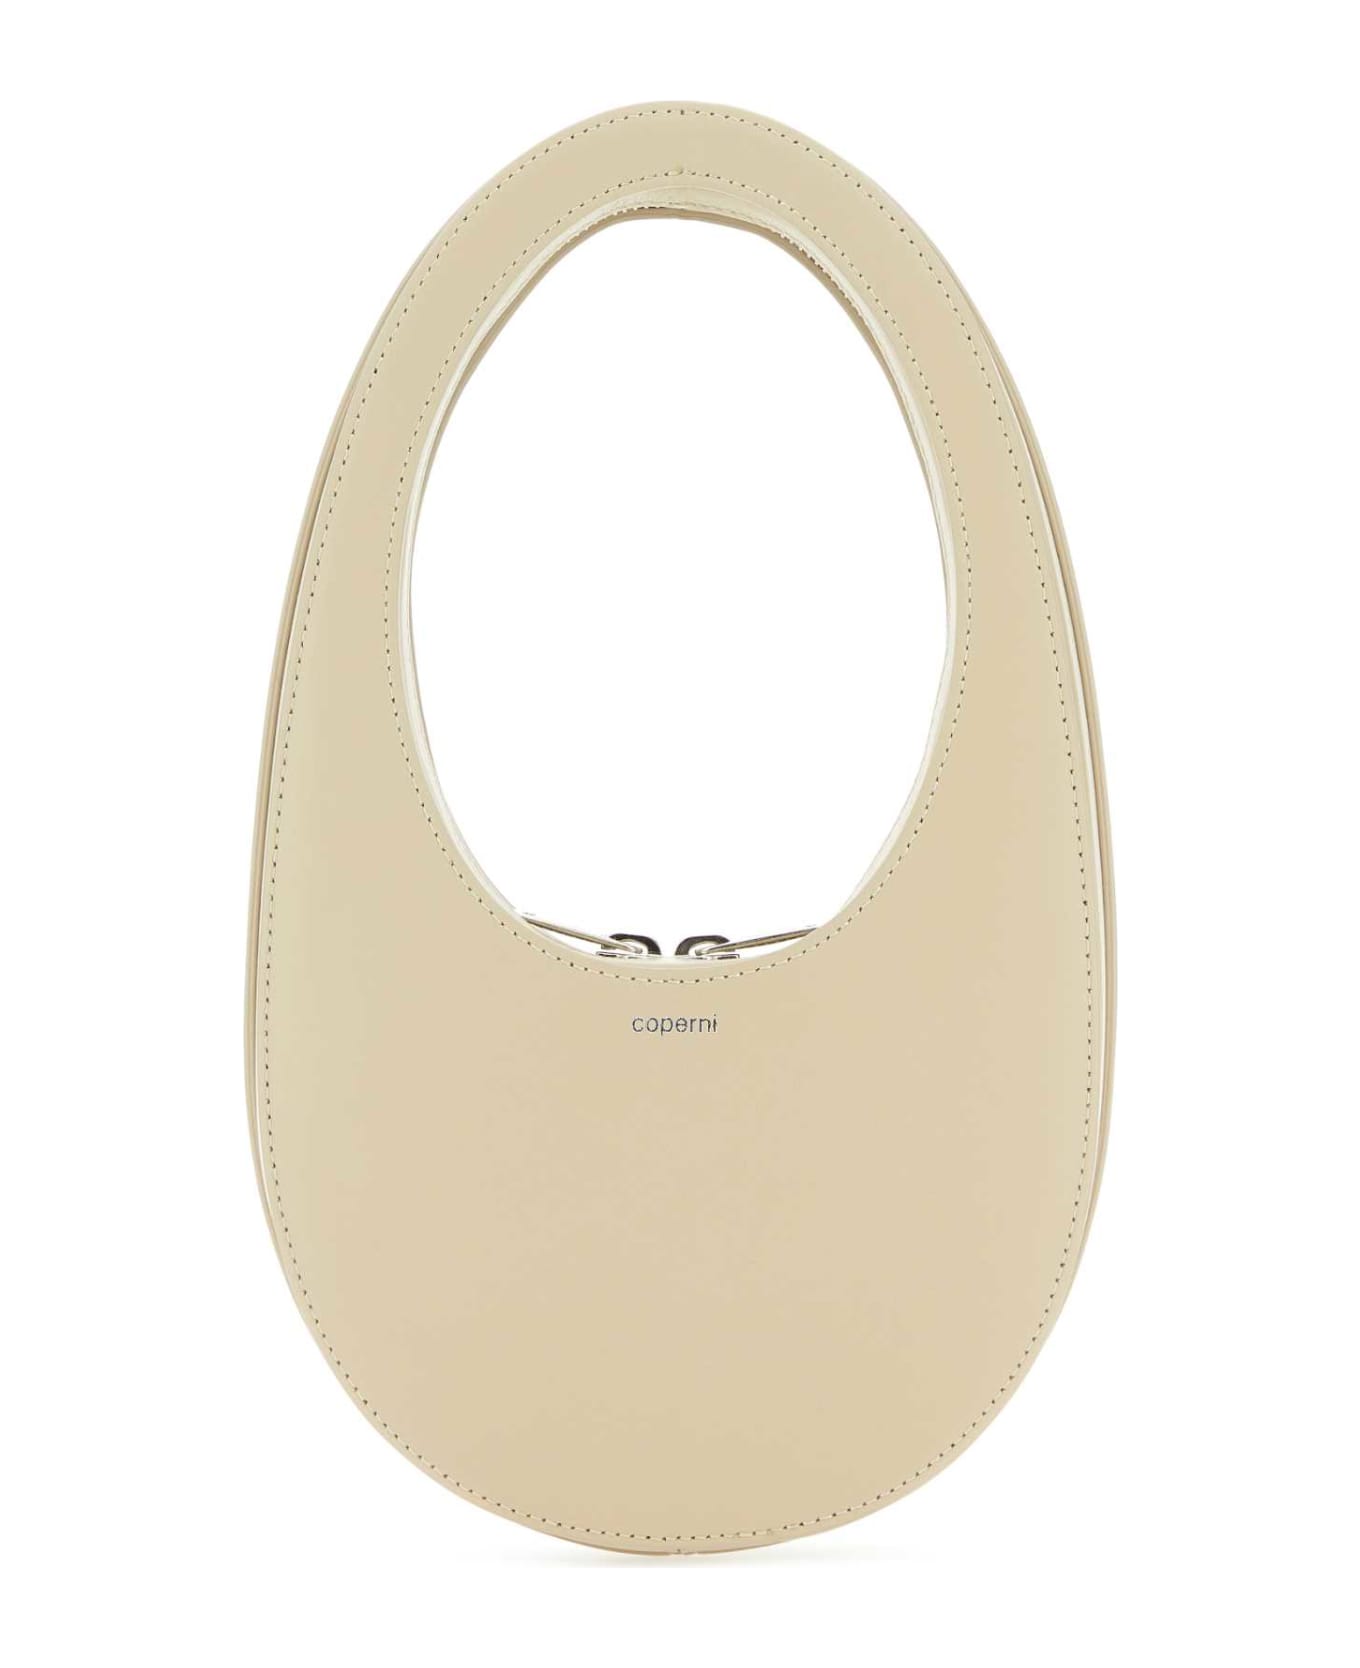 Coperni Sand Leather Mini Swipe Handbag - SAND